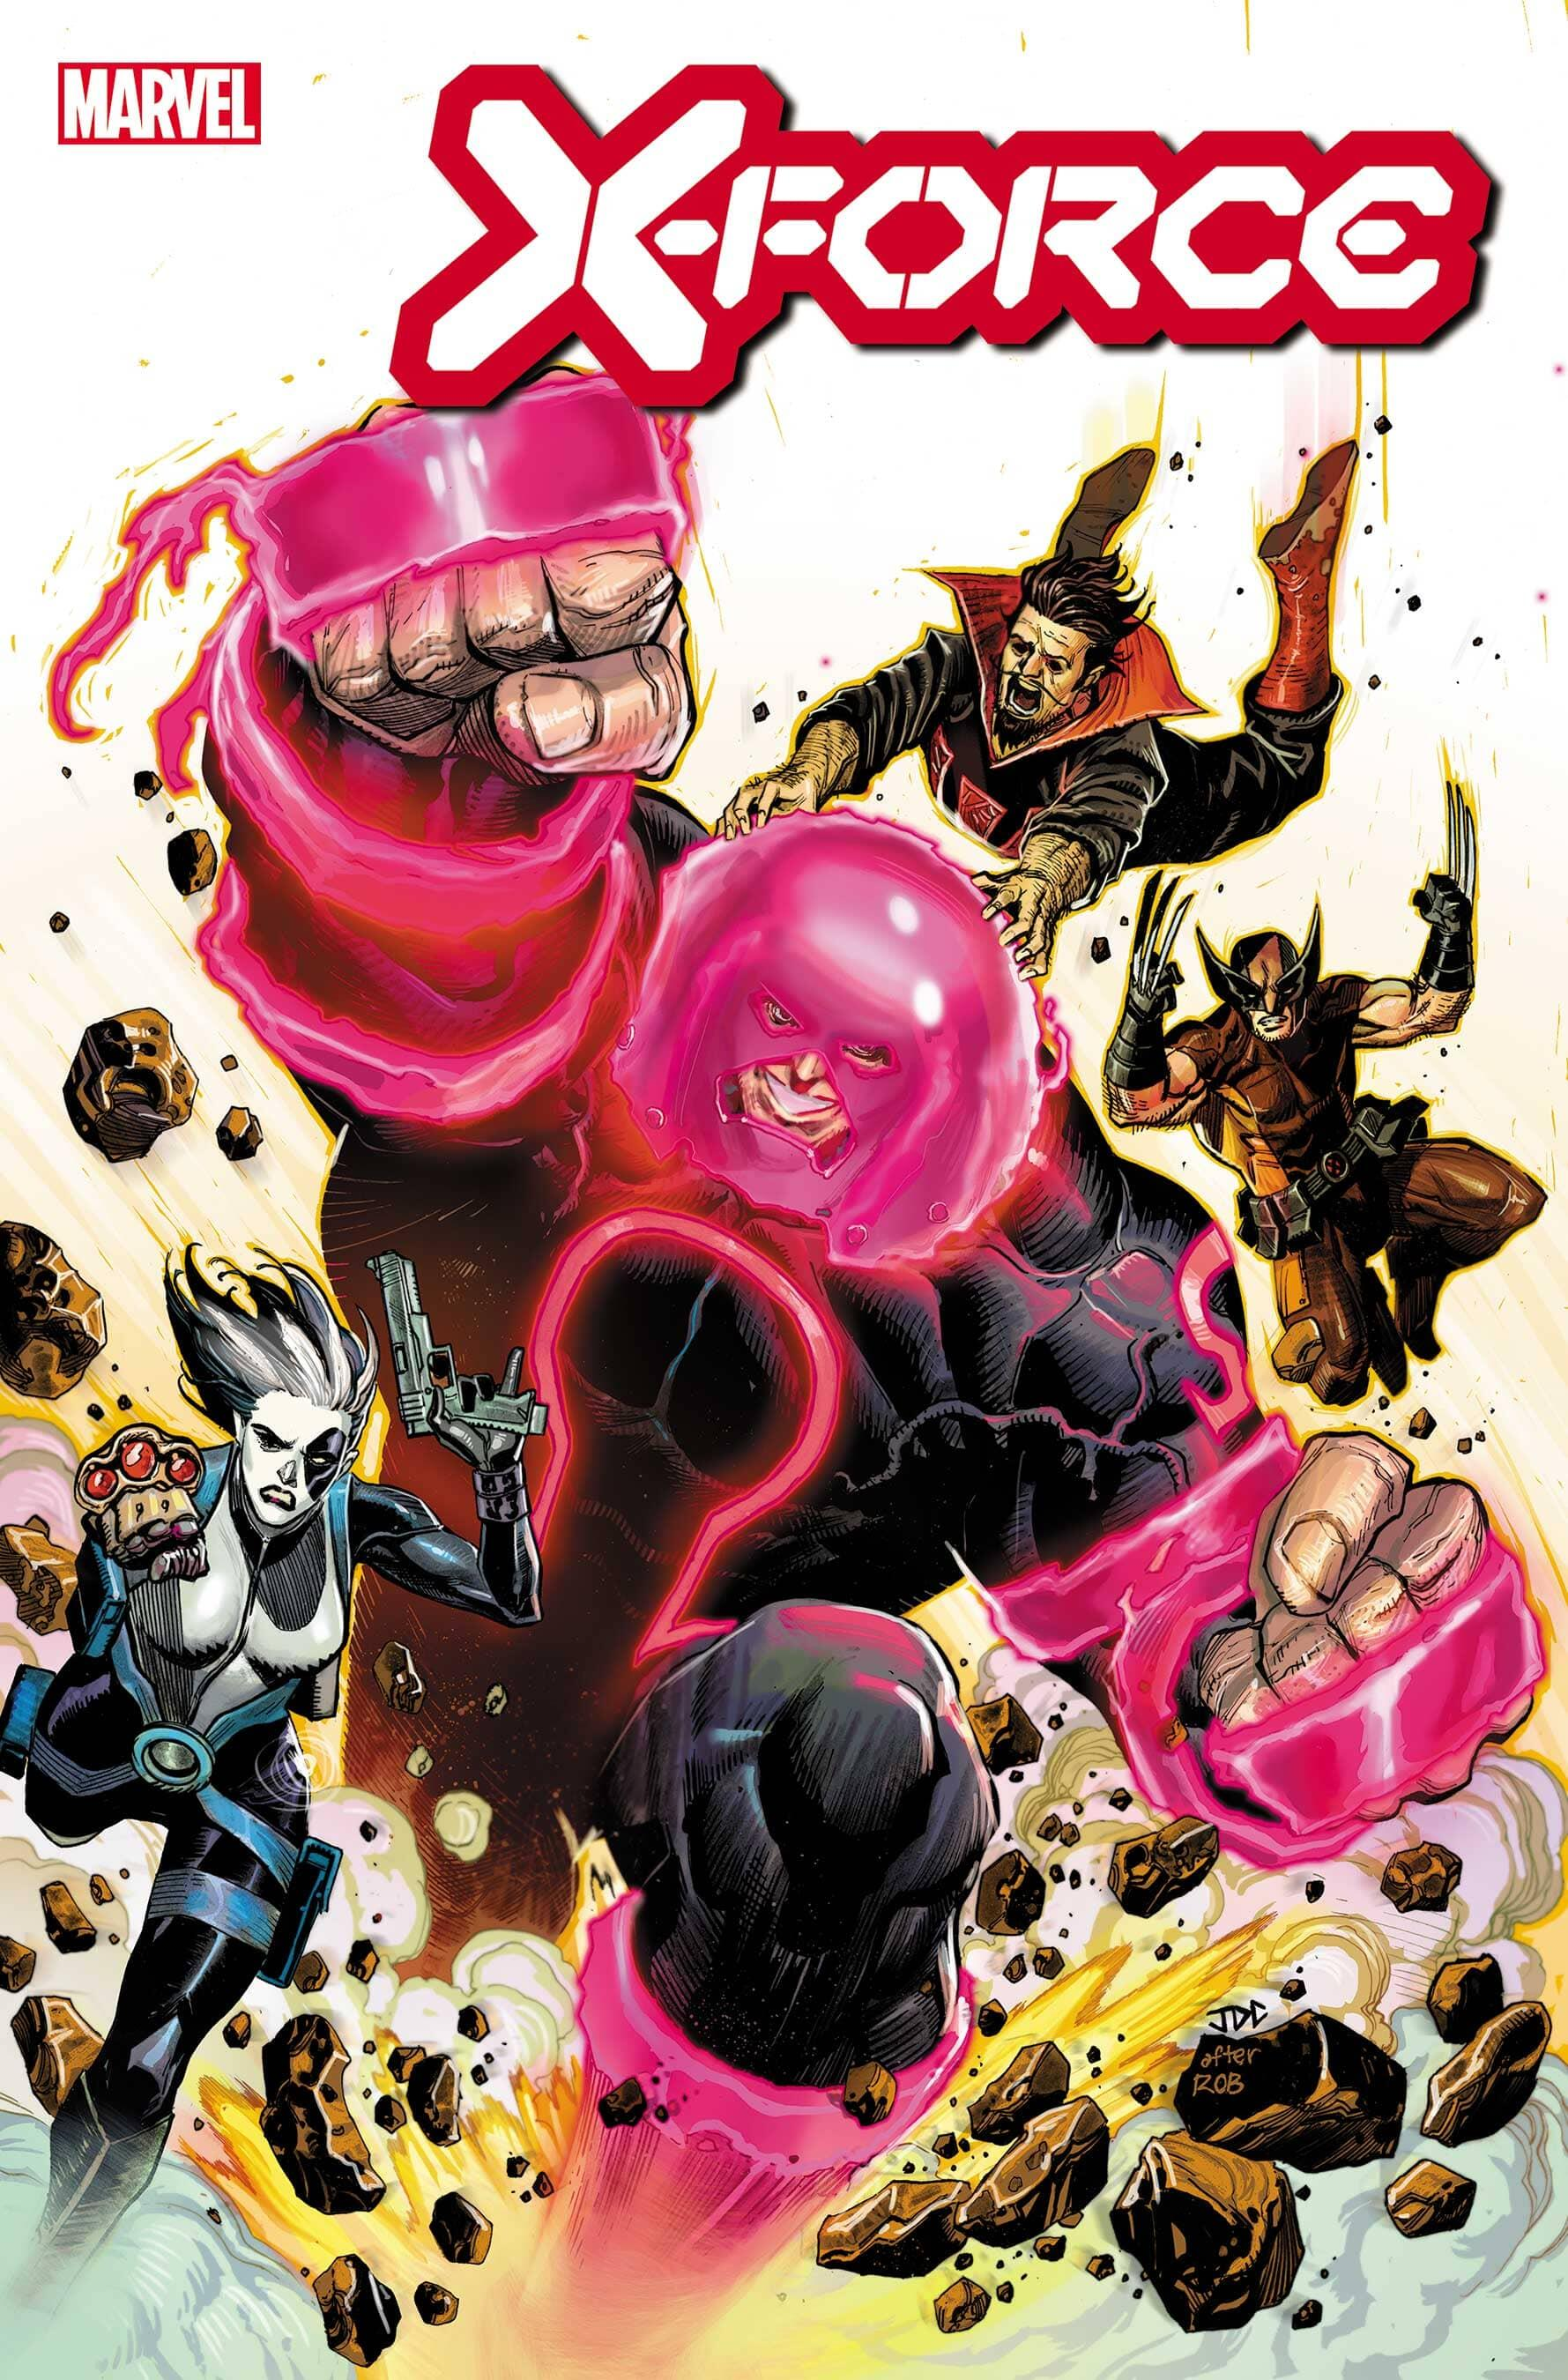 X-Men’s New Juggernaut Is An Omega-Level Mutant Assassin